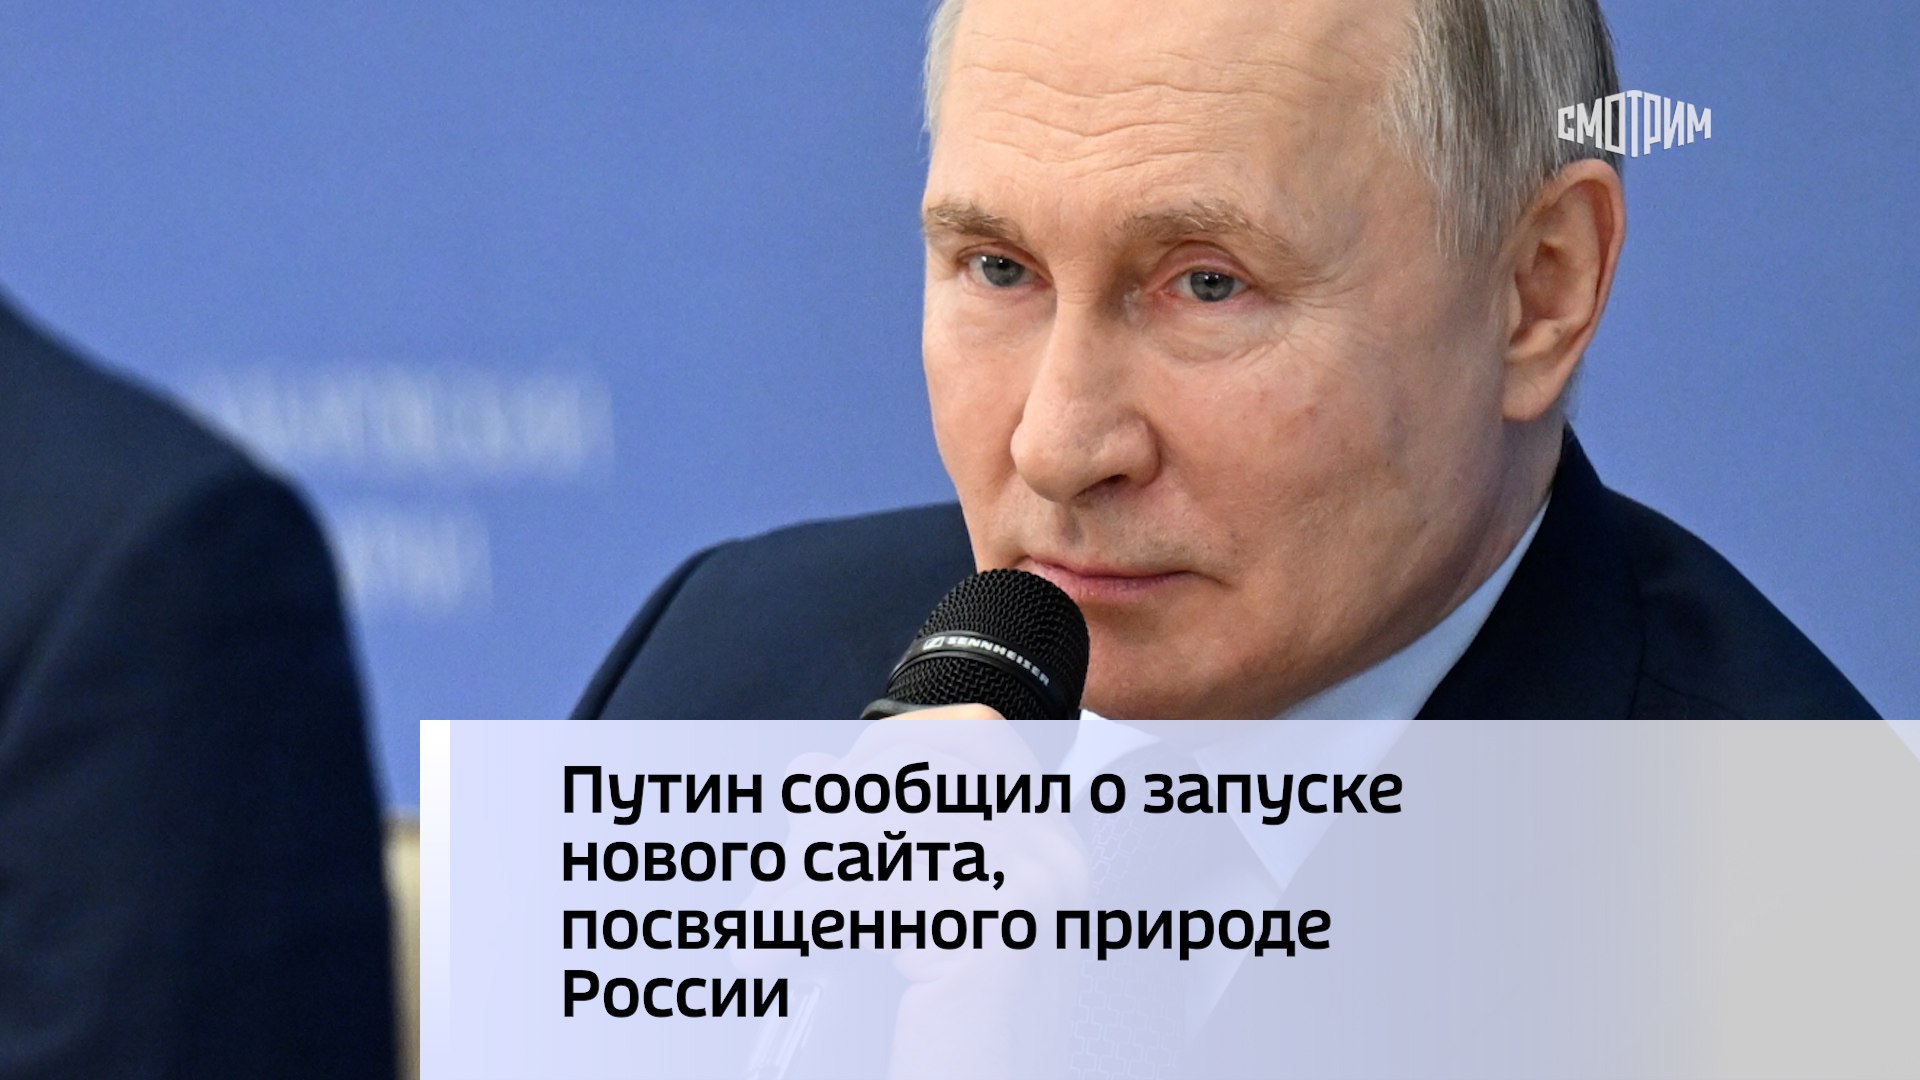 На портале kremlin.ru начал работу новый сайт.